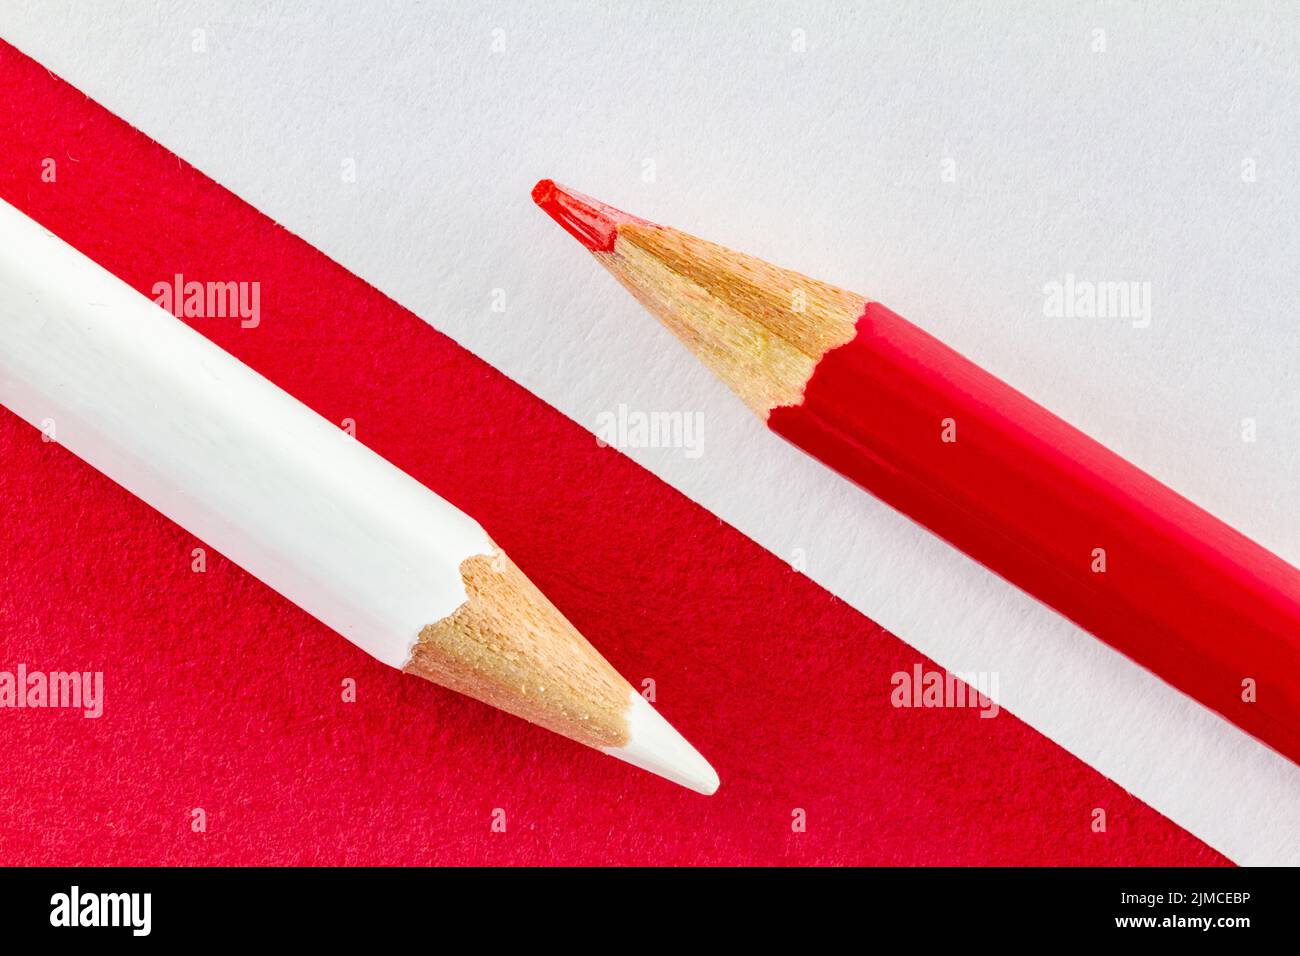 Matite colorate su carta rossa e bianca disposte diagonalmente. Foto Stock